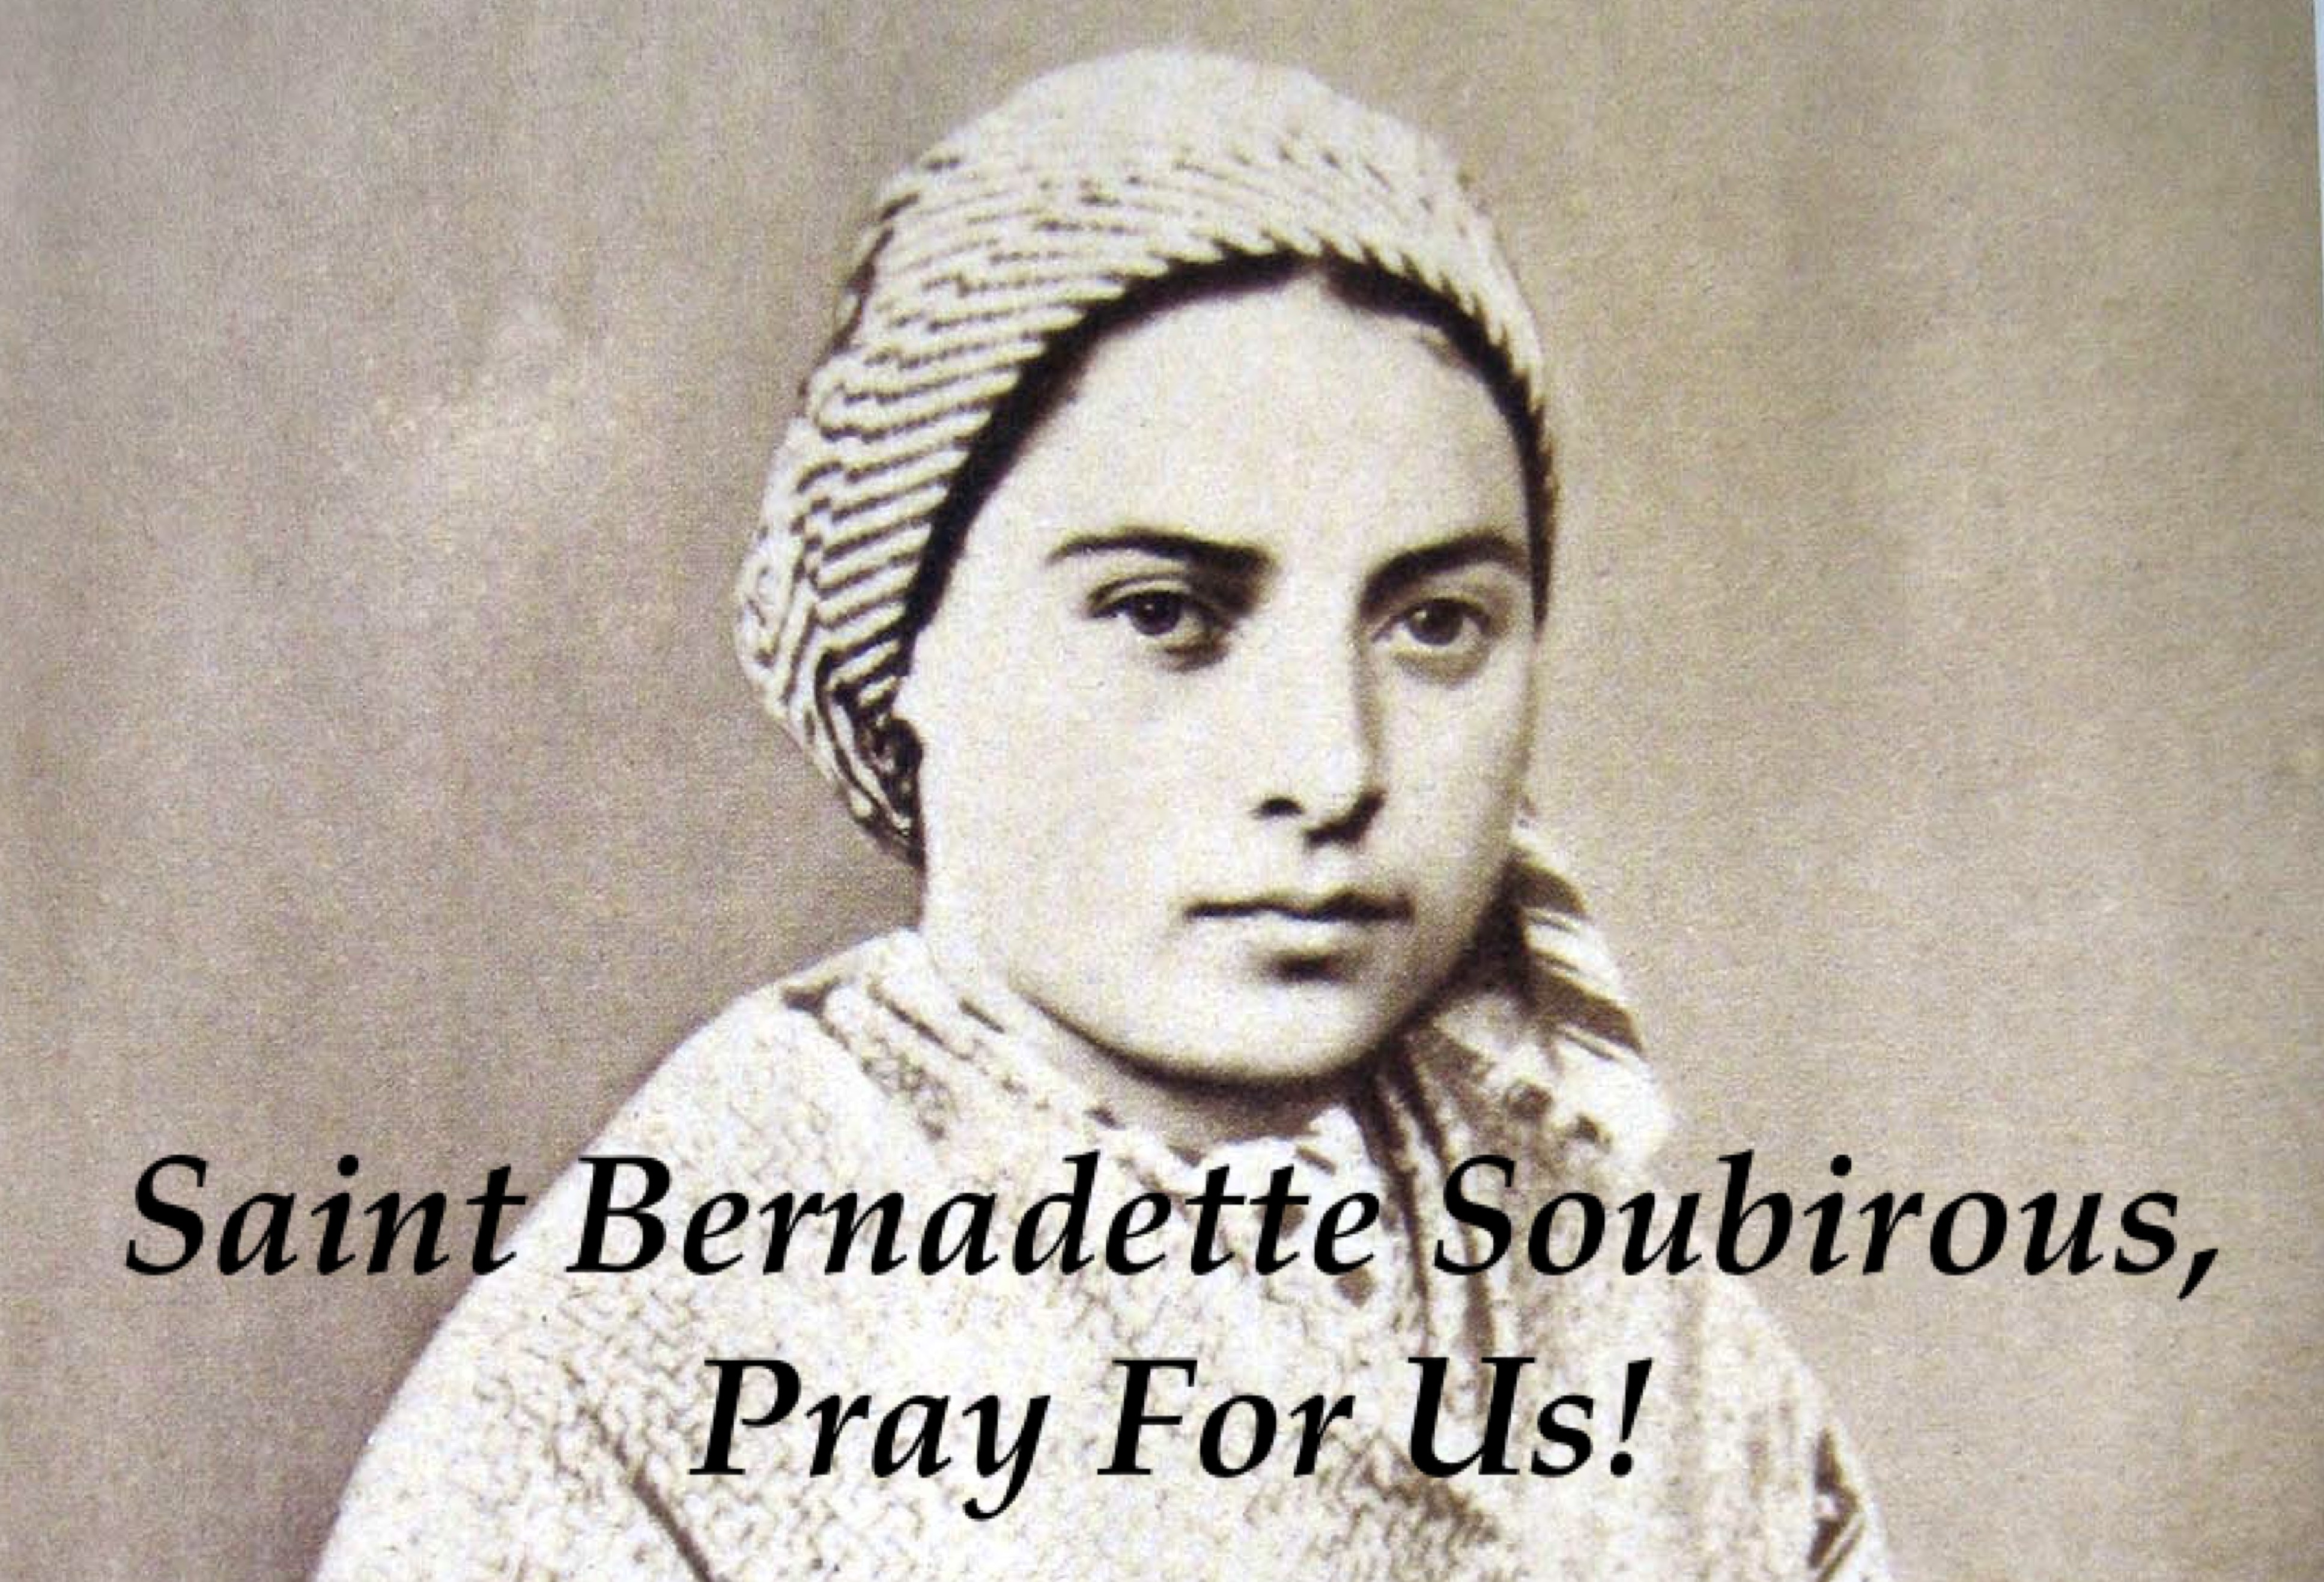 16th April - Saint Bernadette Soubirous